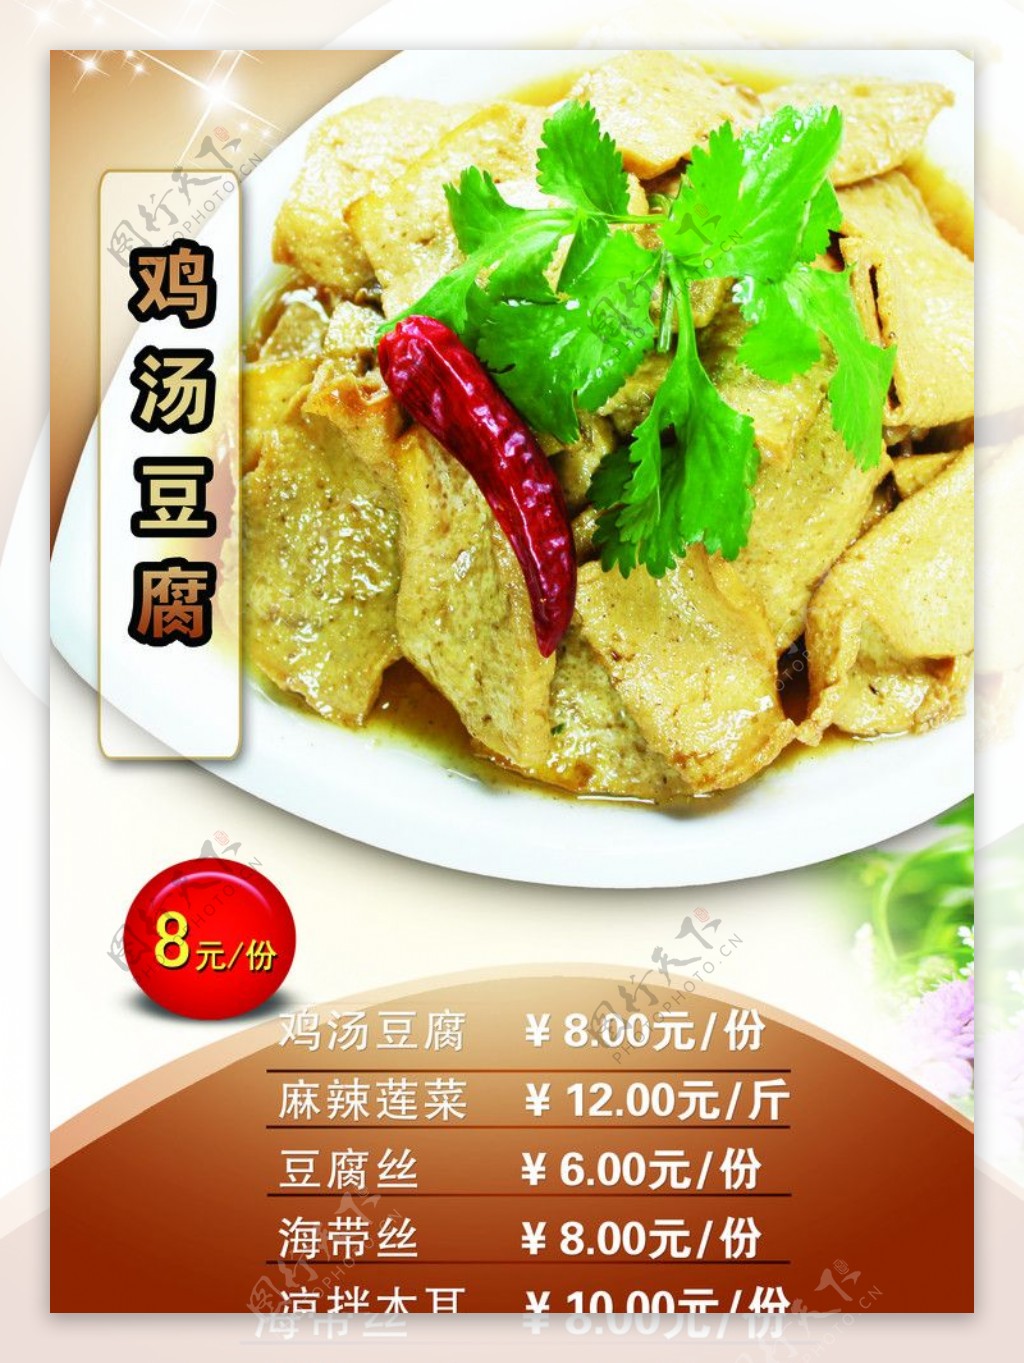 鸡汤豆腐菜单图片